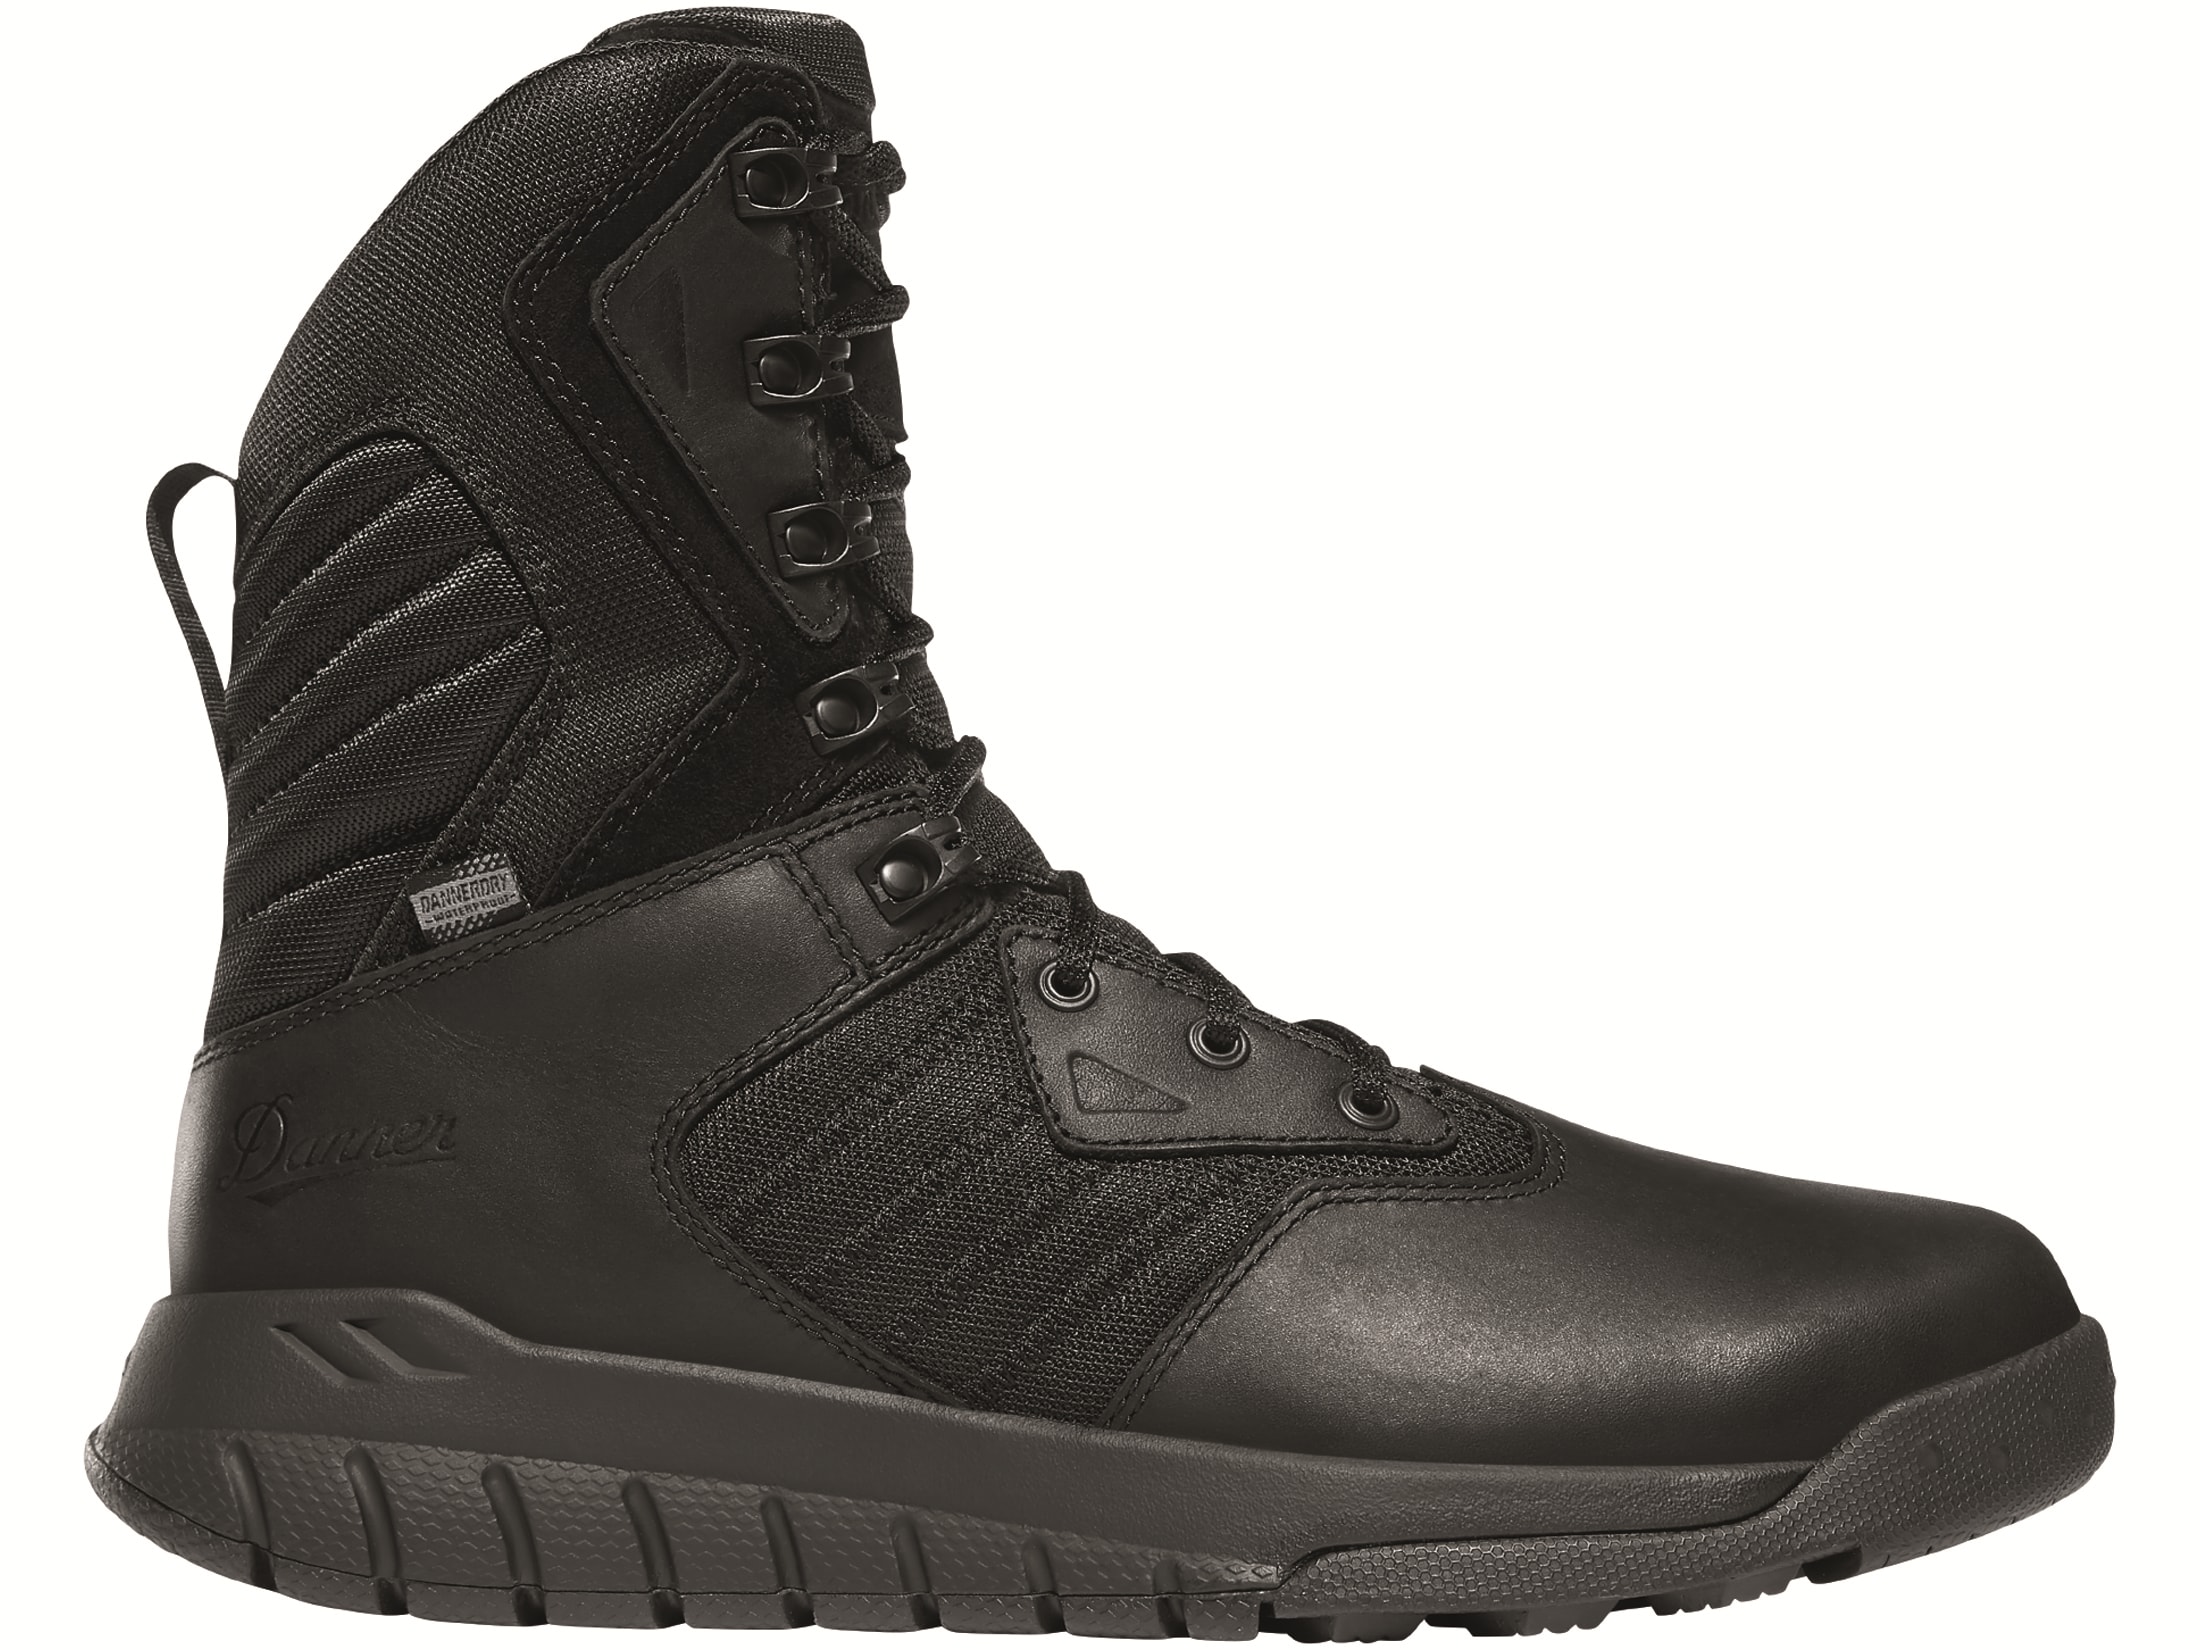 Danner Instinct 8 Waterproof Tactical Side-Zip Boots Leather/Nylon